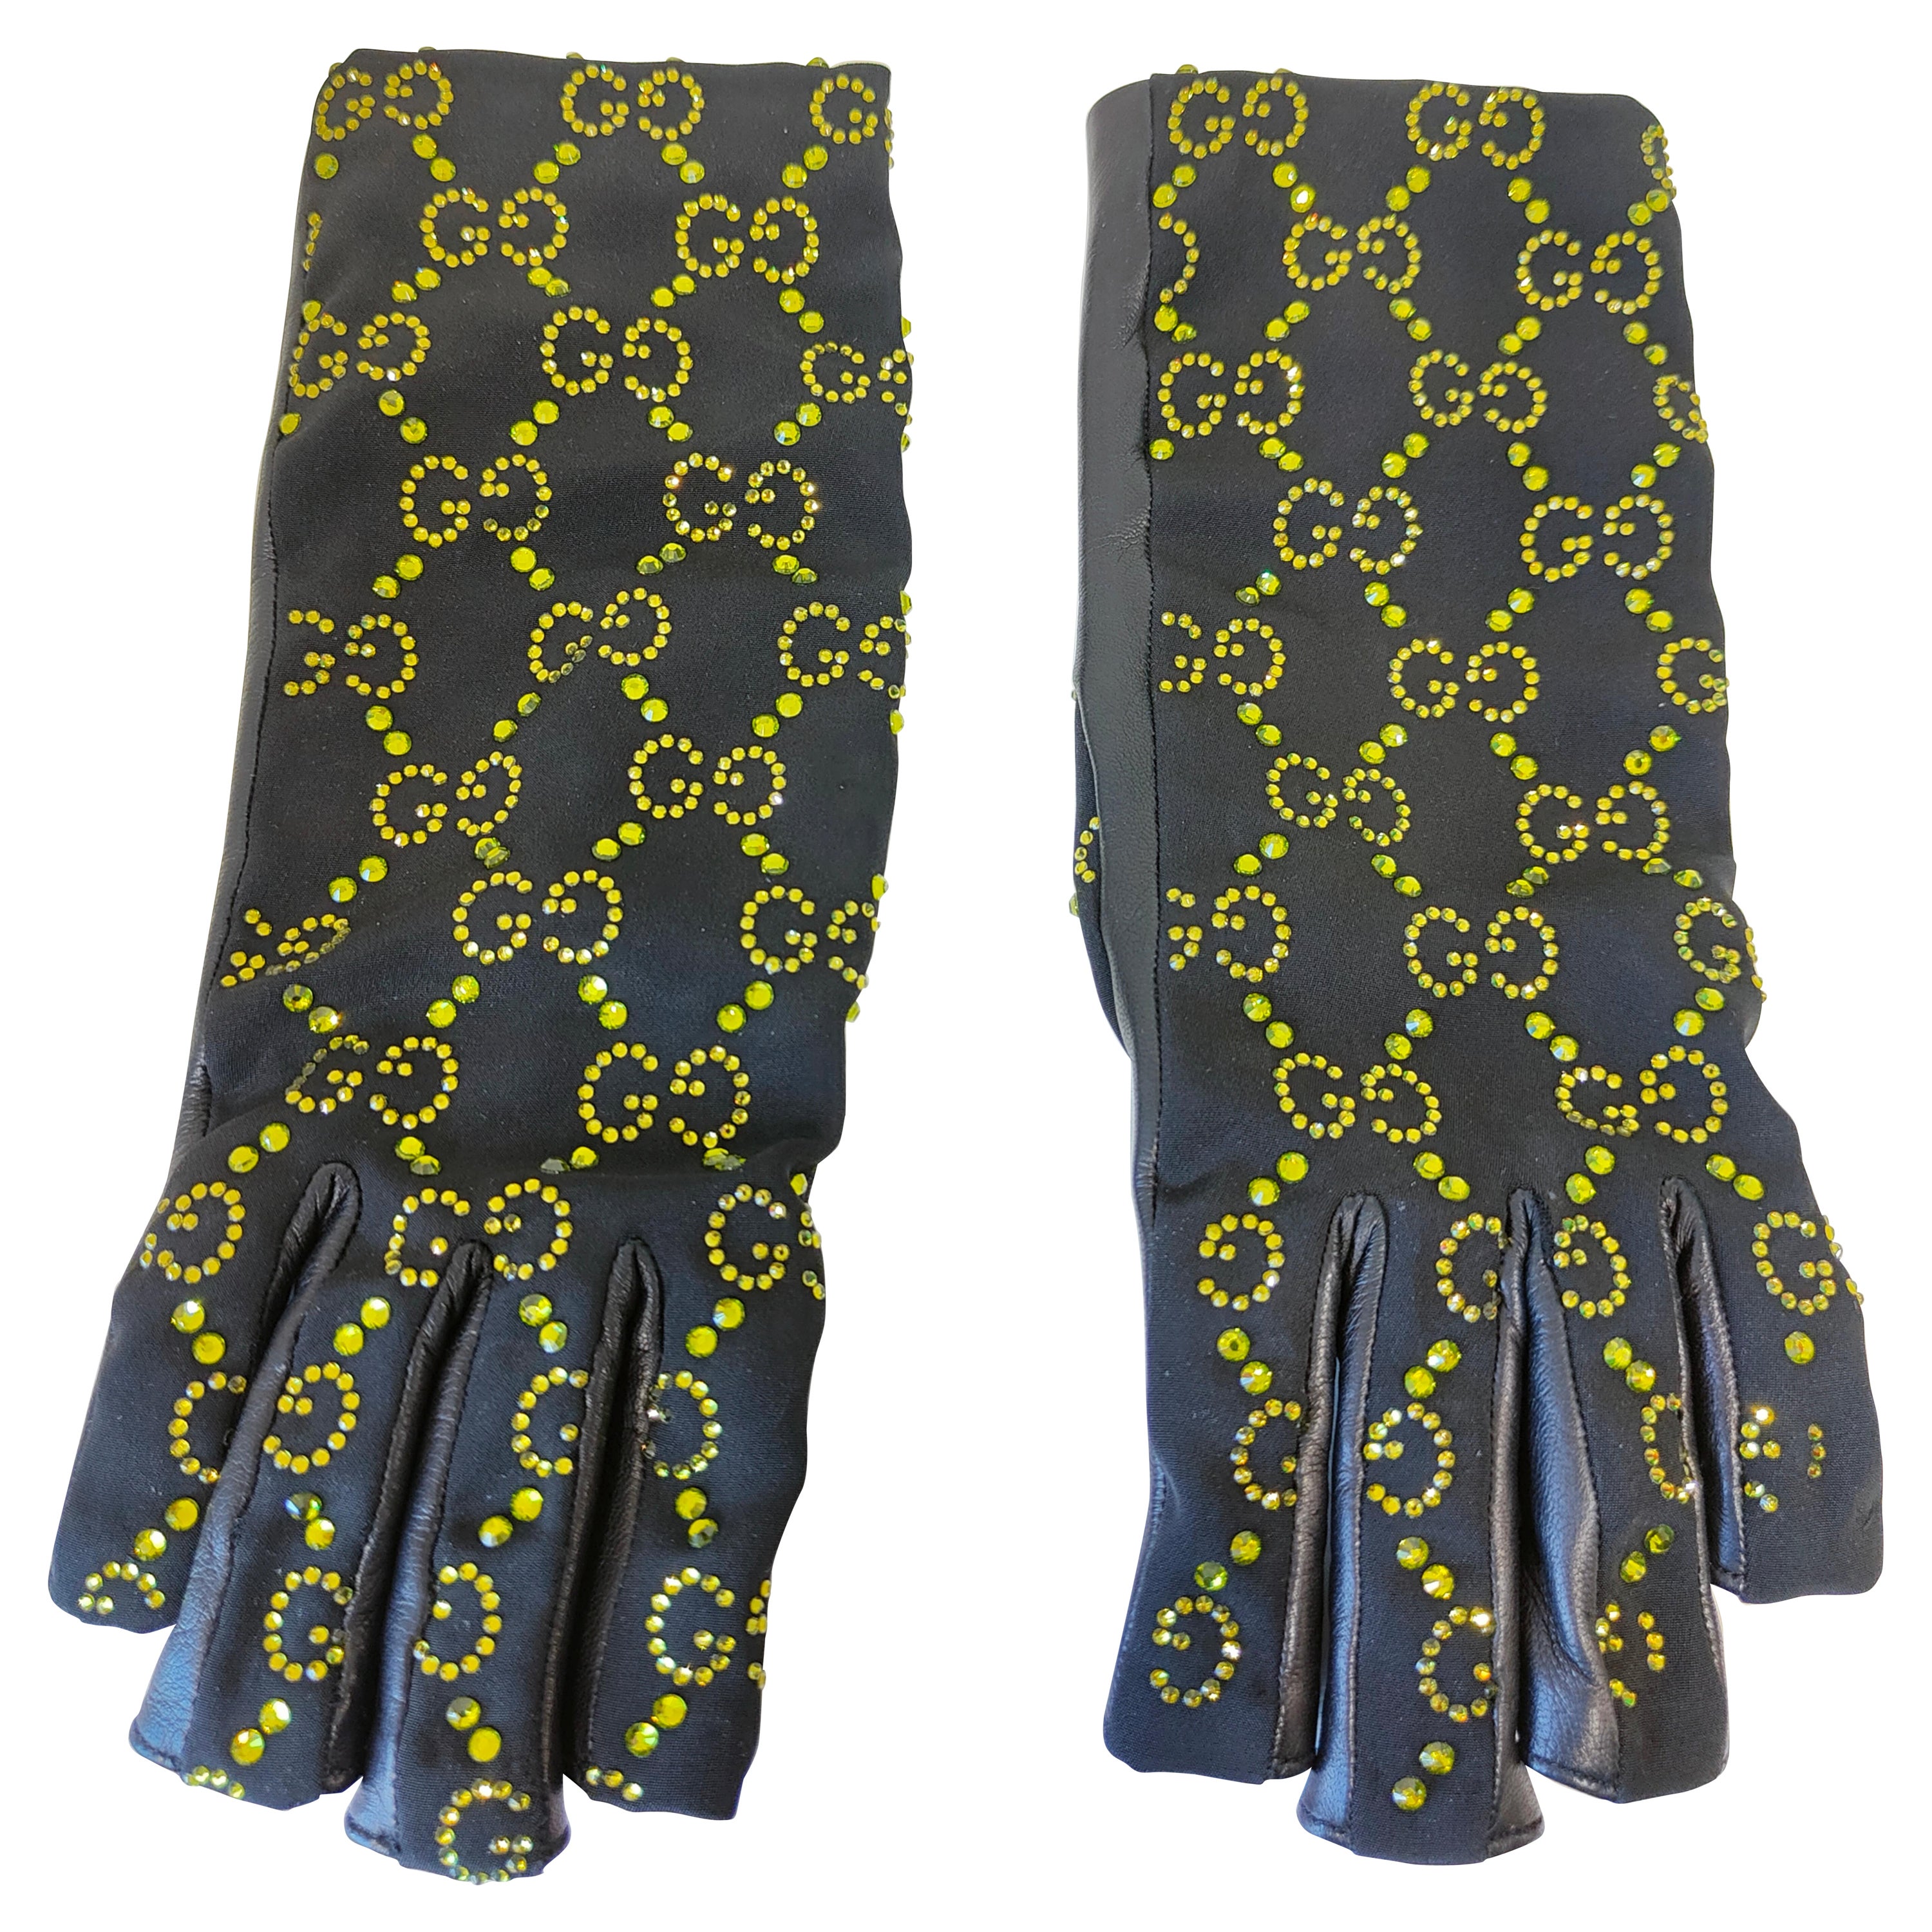 Gucci für Billie Eilish: schwarze, grüne Swarovski-Handschuhe in limitierter Auflage